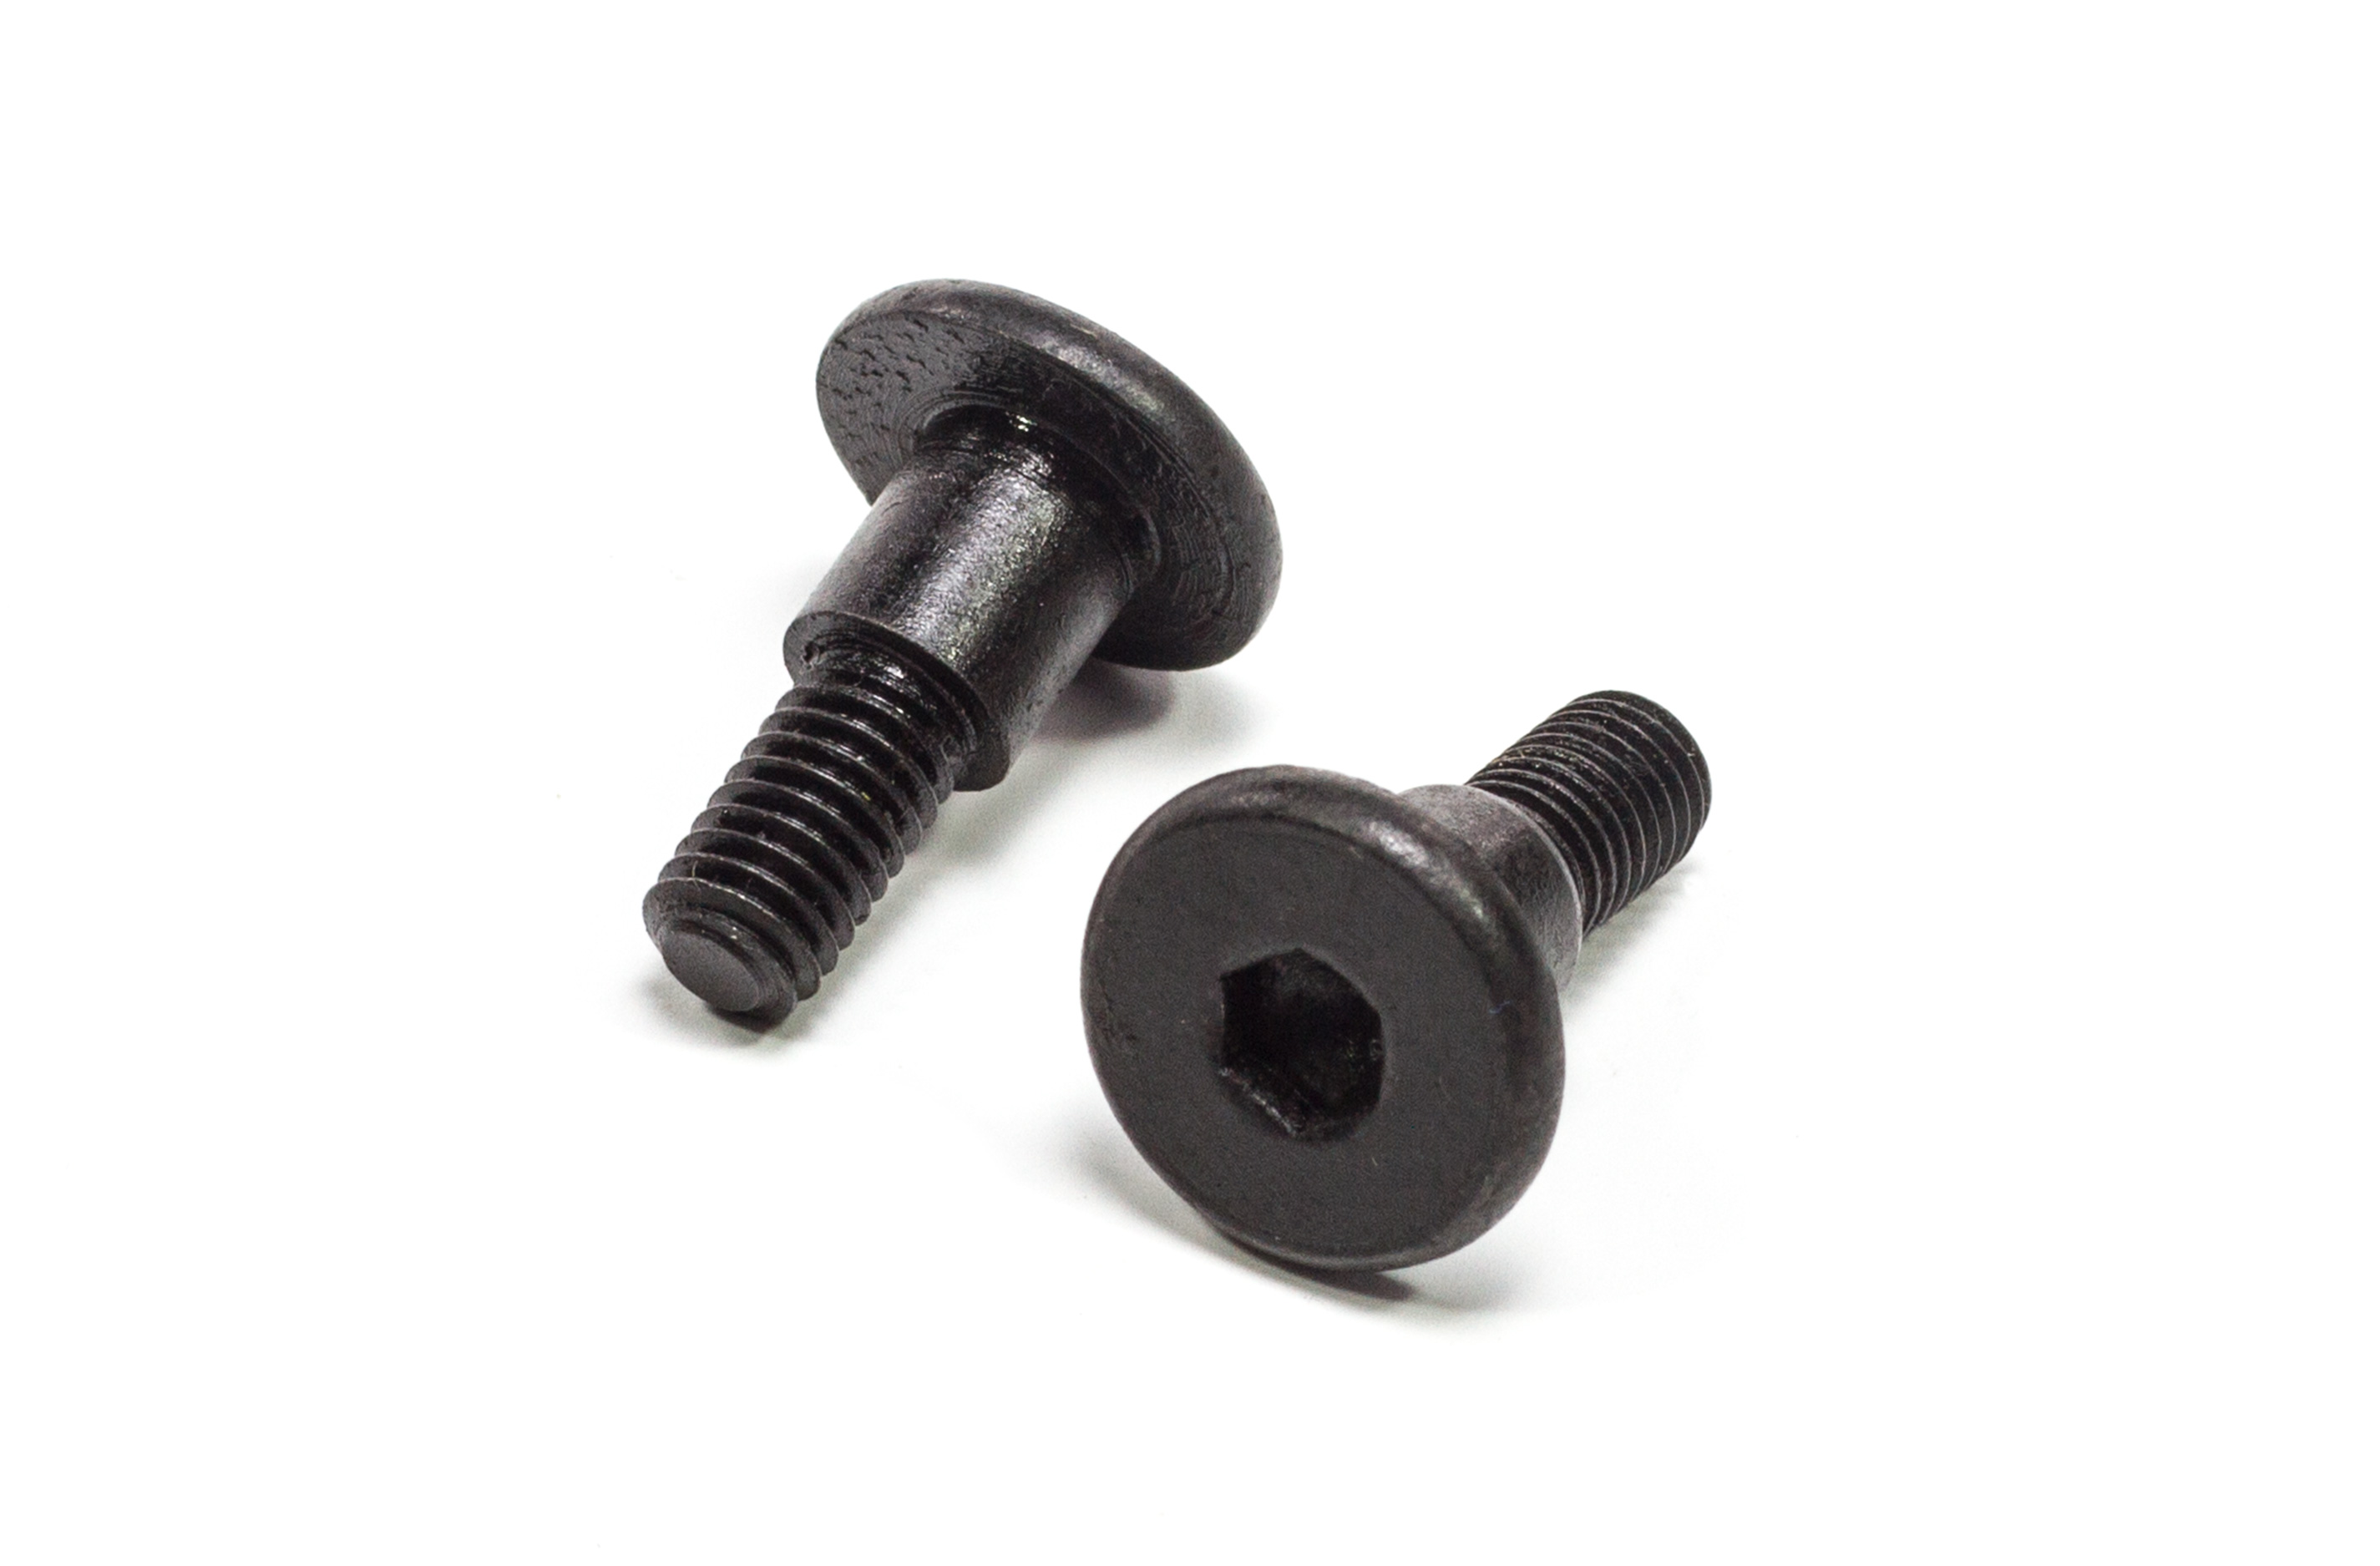 AREA 5T-008/03 shoulder screws for 5T-008 centerlink